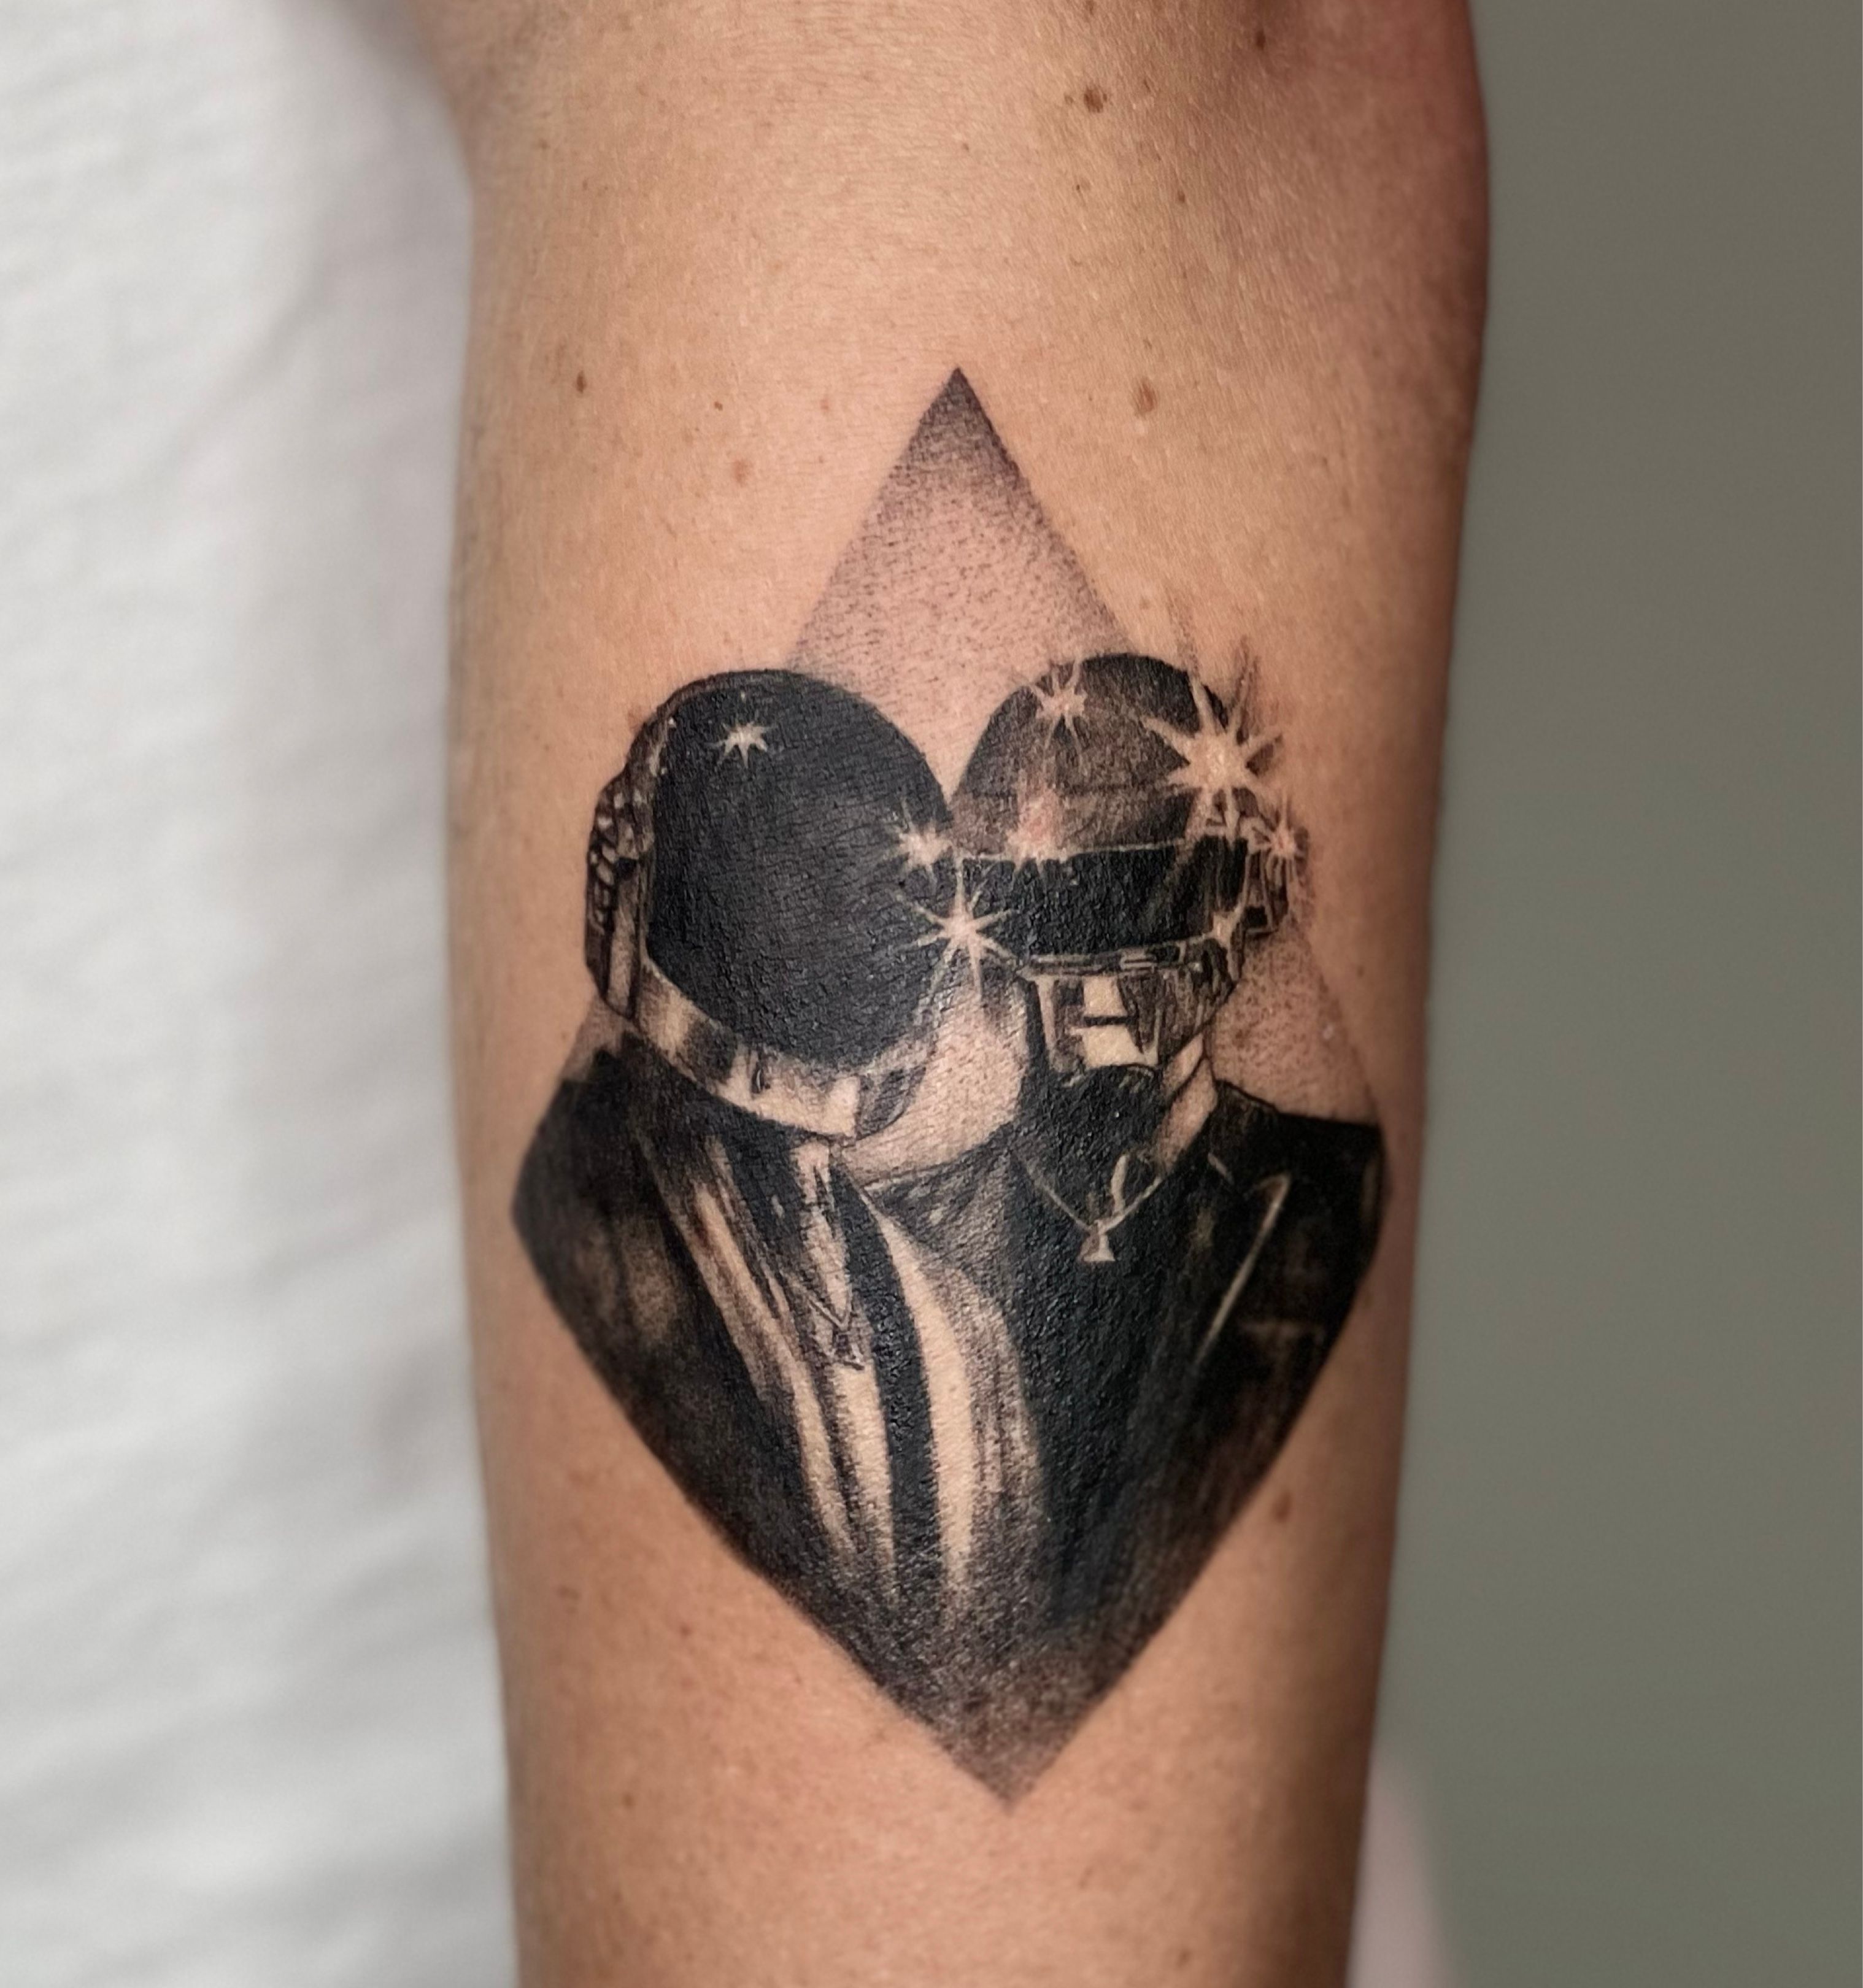 Tattoo tagged with Daft Punk  inkedappcom